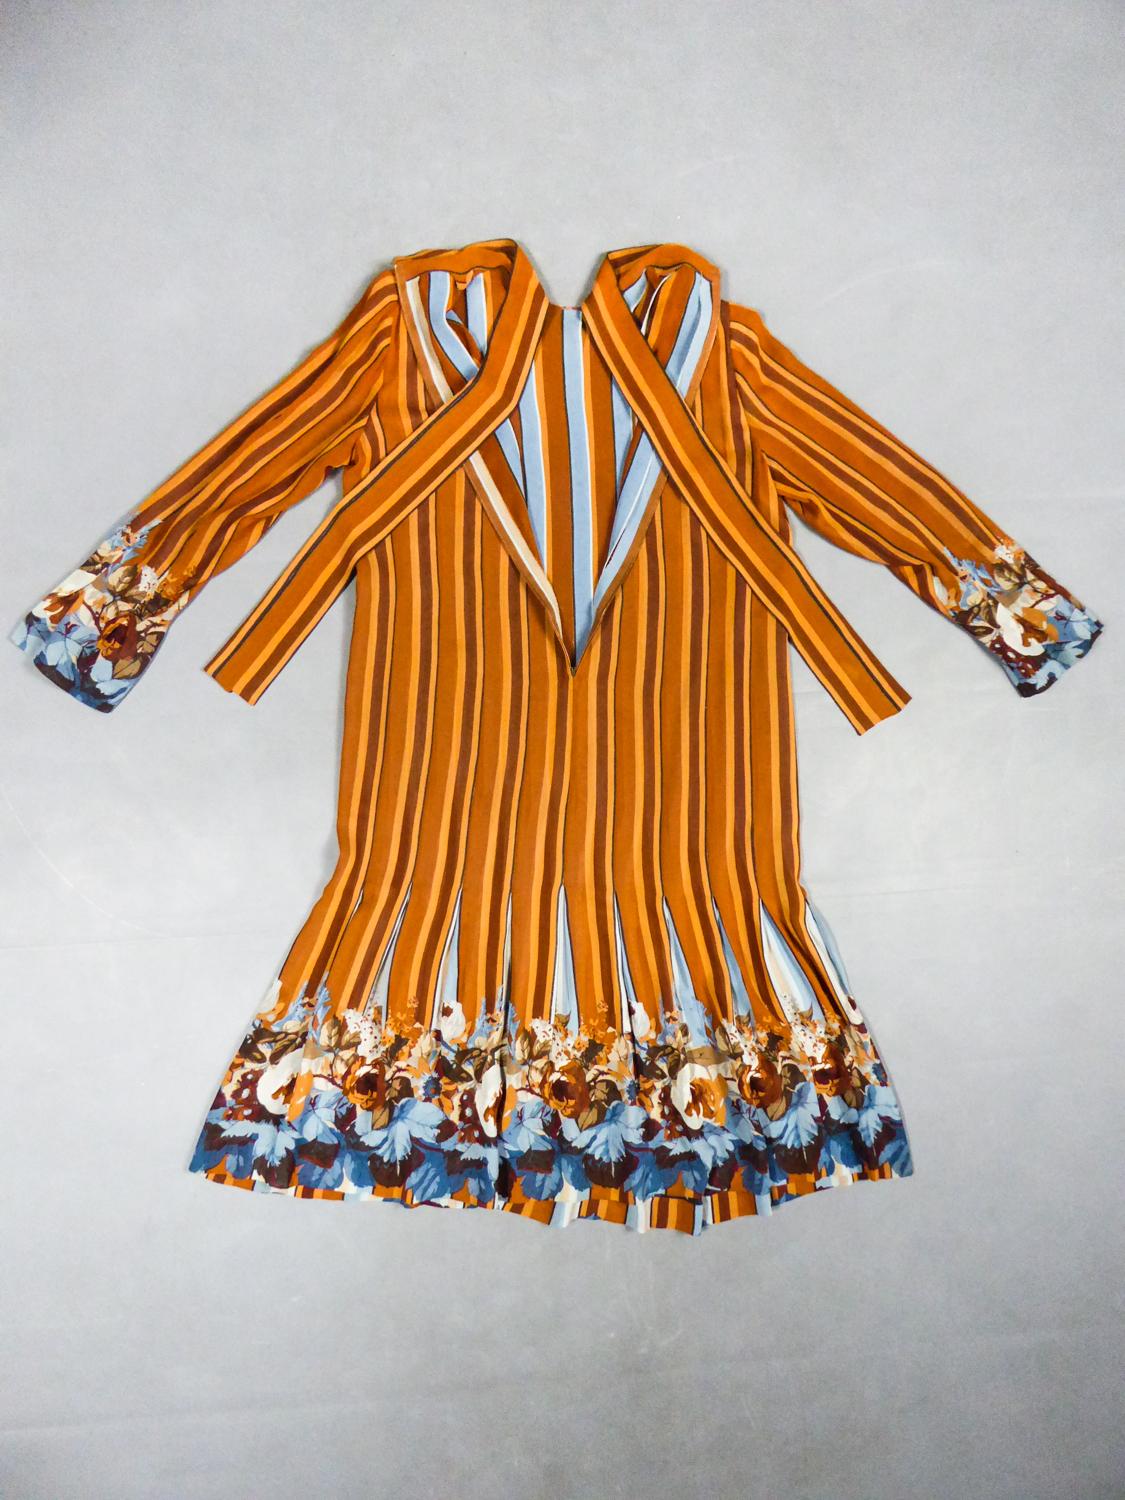 Um 1970
Frankreich

Elegantes, zeitloses Kleid aus bedrucktem Seidenkrepp von einem anonymen französischen Designer aus den 1970er Jahren. Gerades Kleid mit langen Ärmeln und Rundhalsausschnitt mit langen Bändern zum Binden. Erstaunliche Arbeit mit